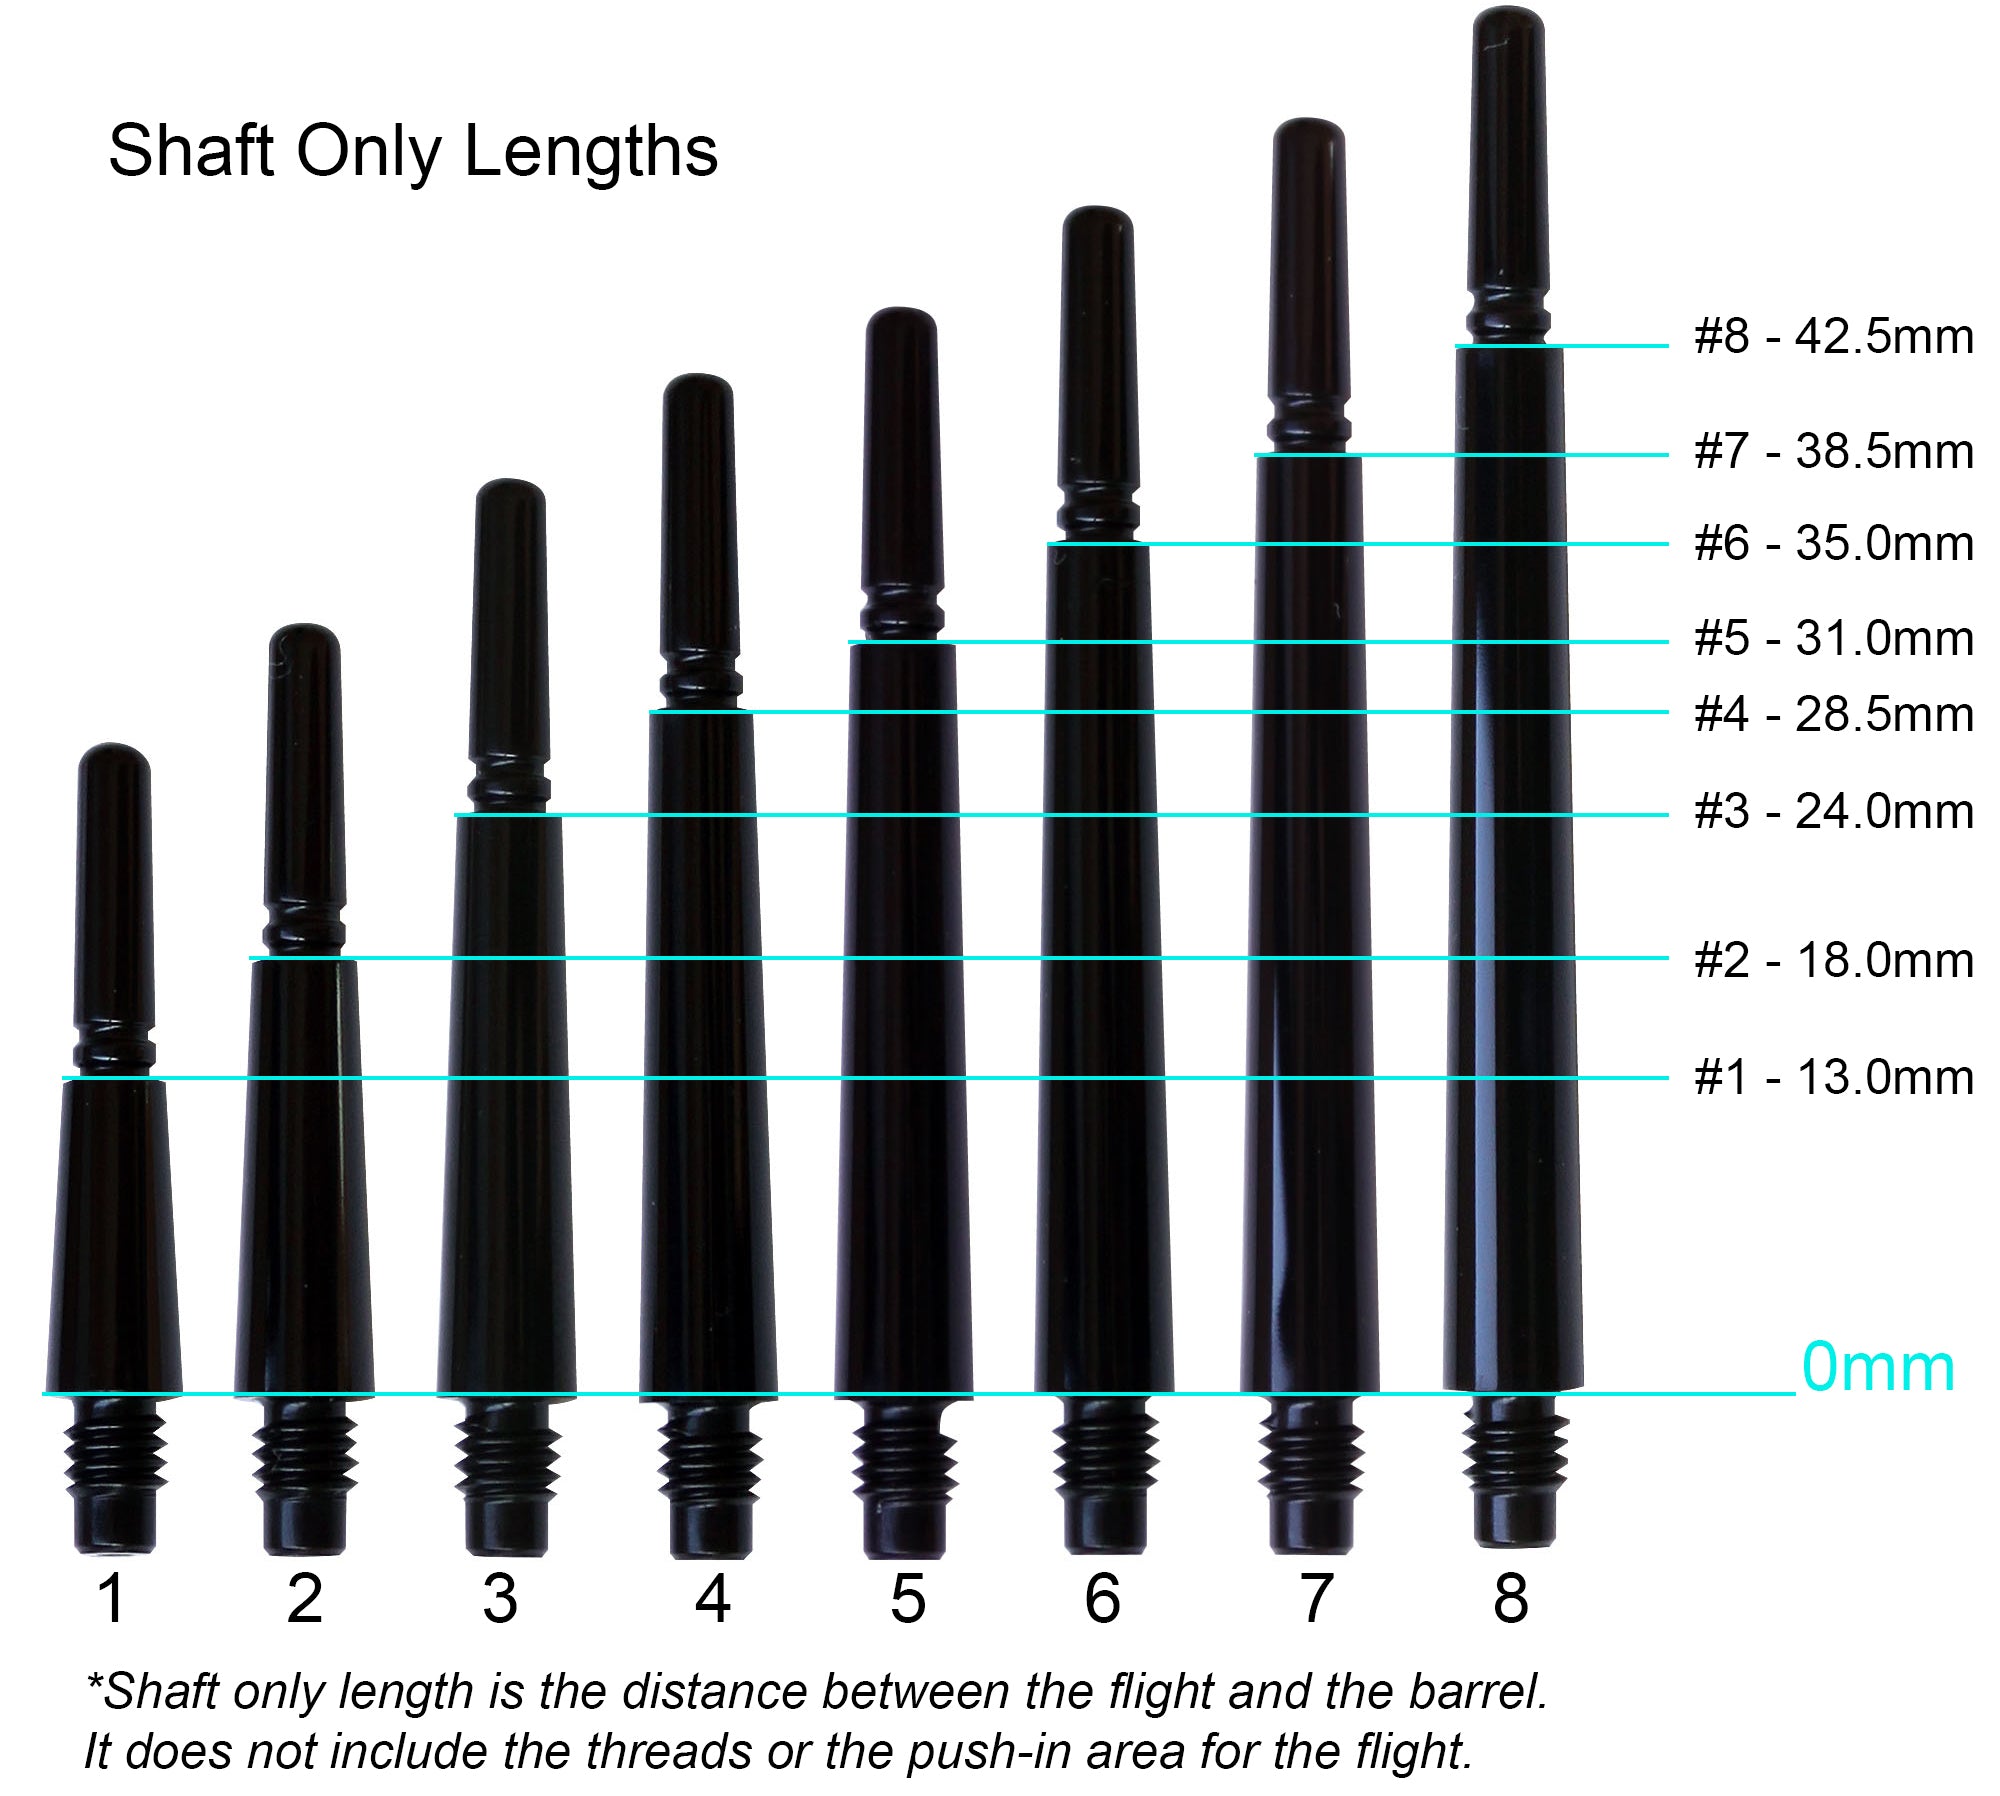 Fit Flight Gear Slim Spinning Dart Shafts - Long #7 (38.5mm) Black